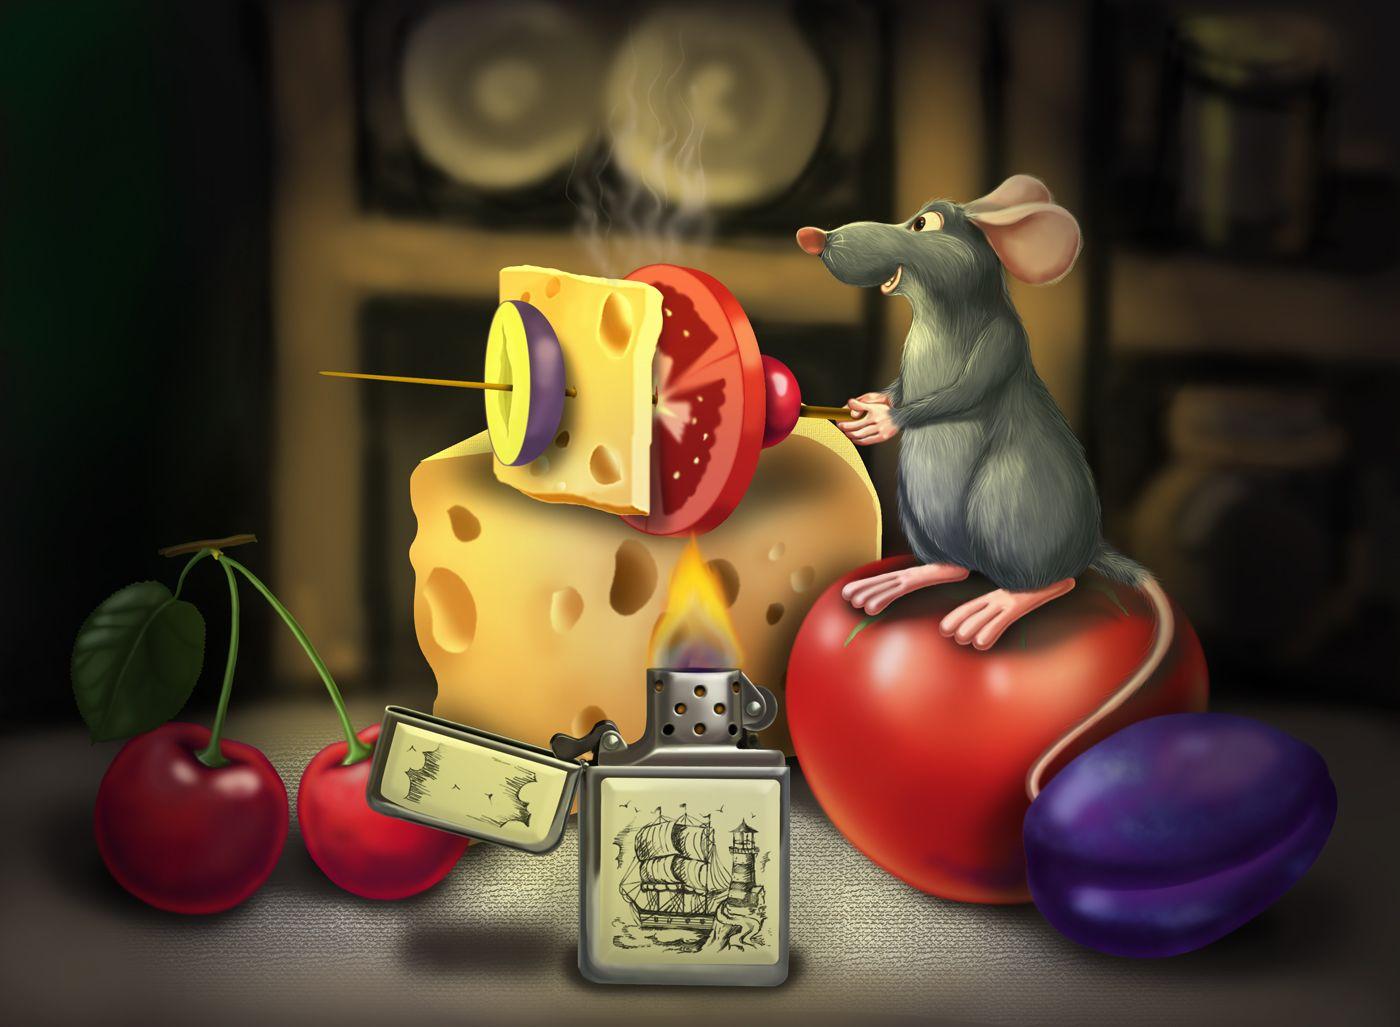 Ratatouille wallpaper picture download